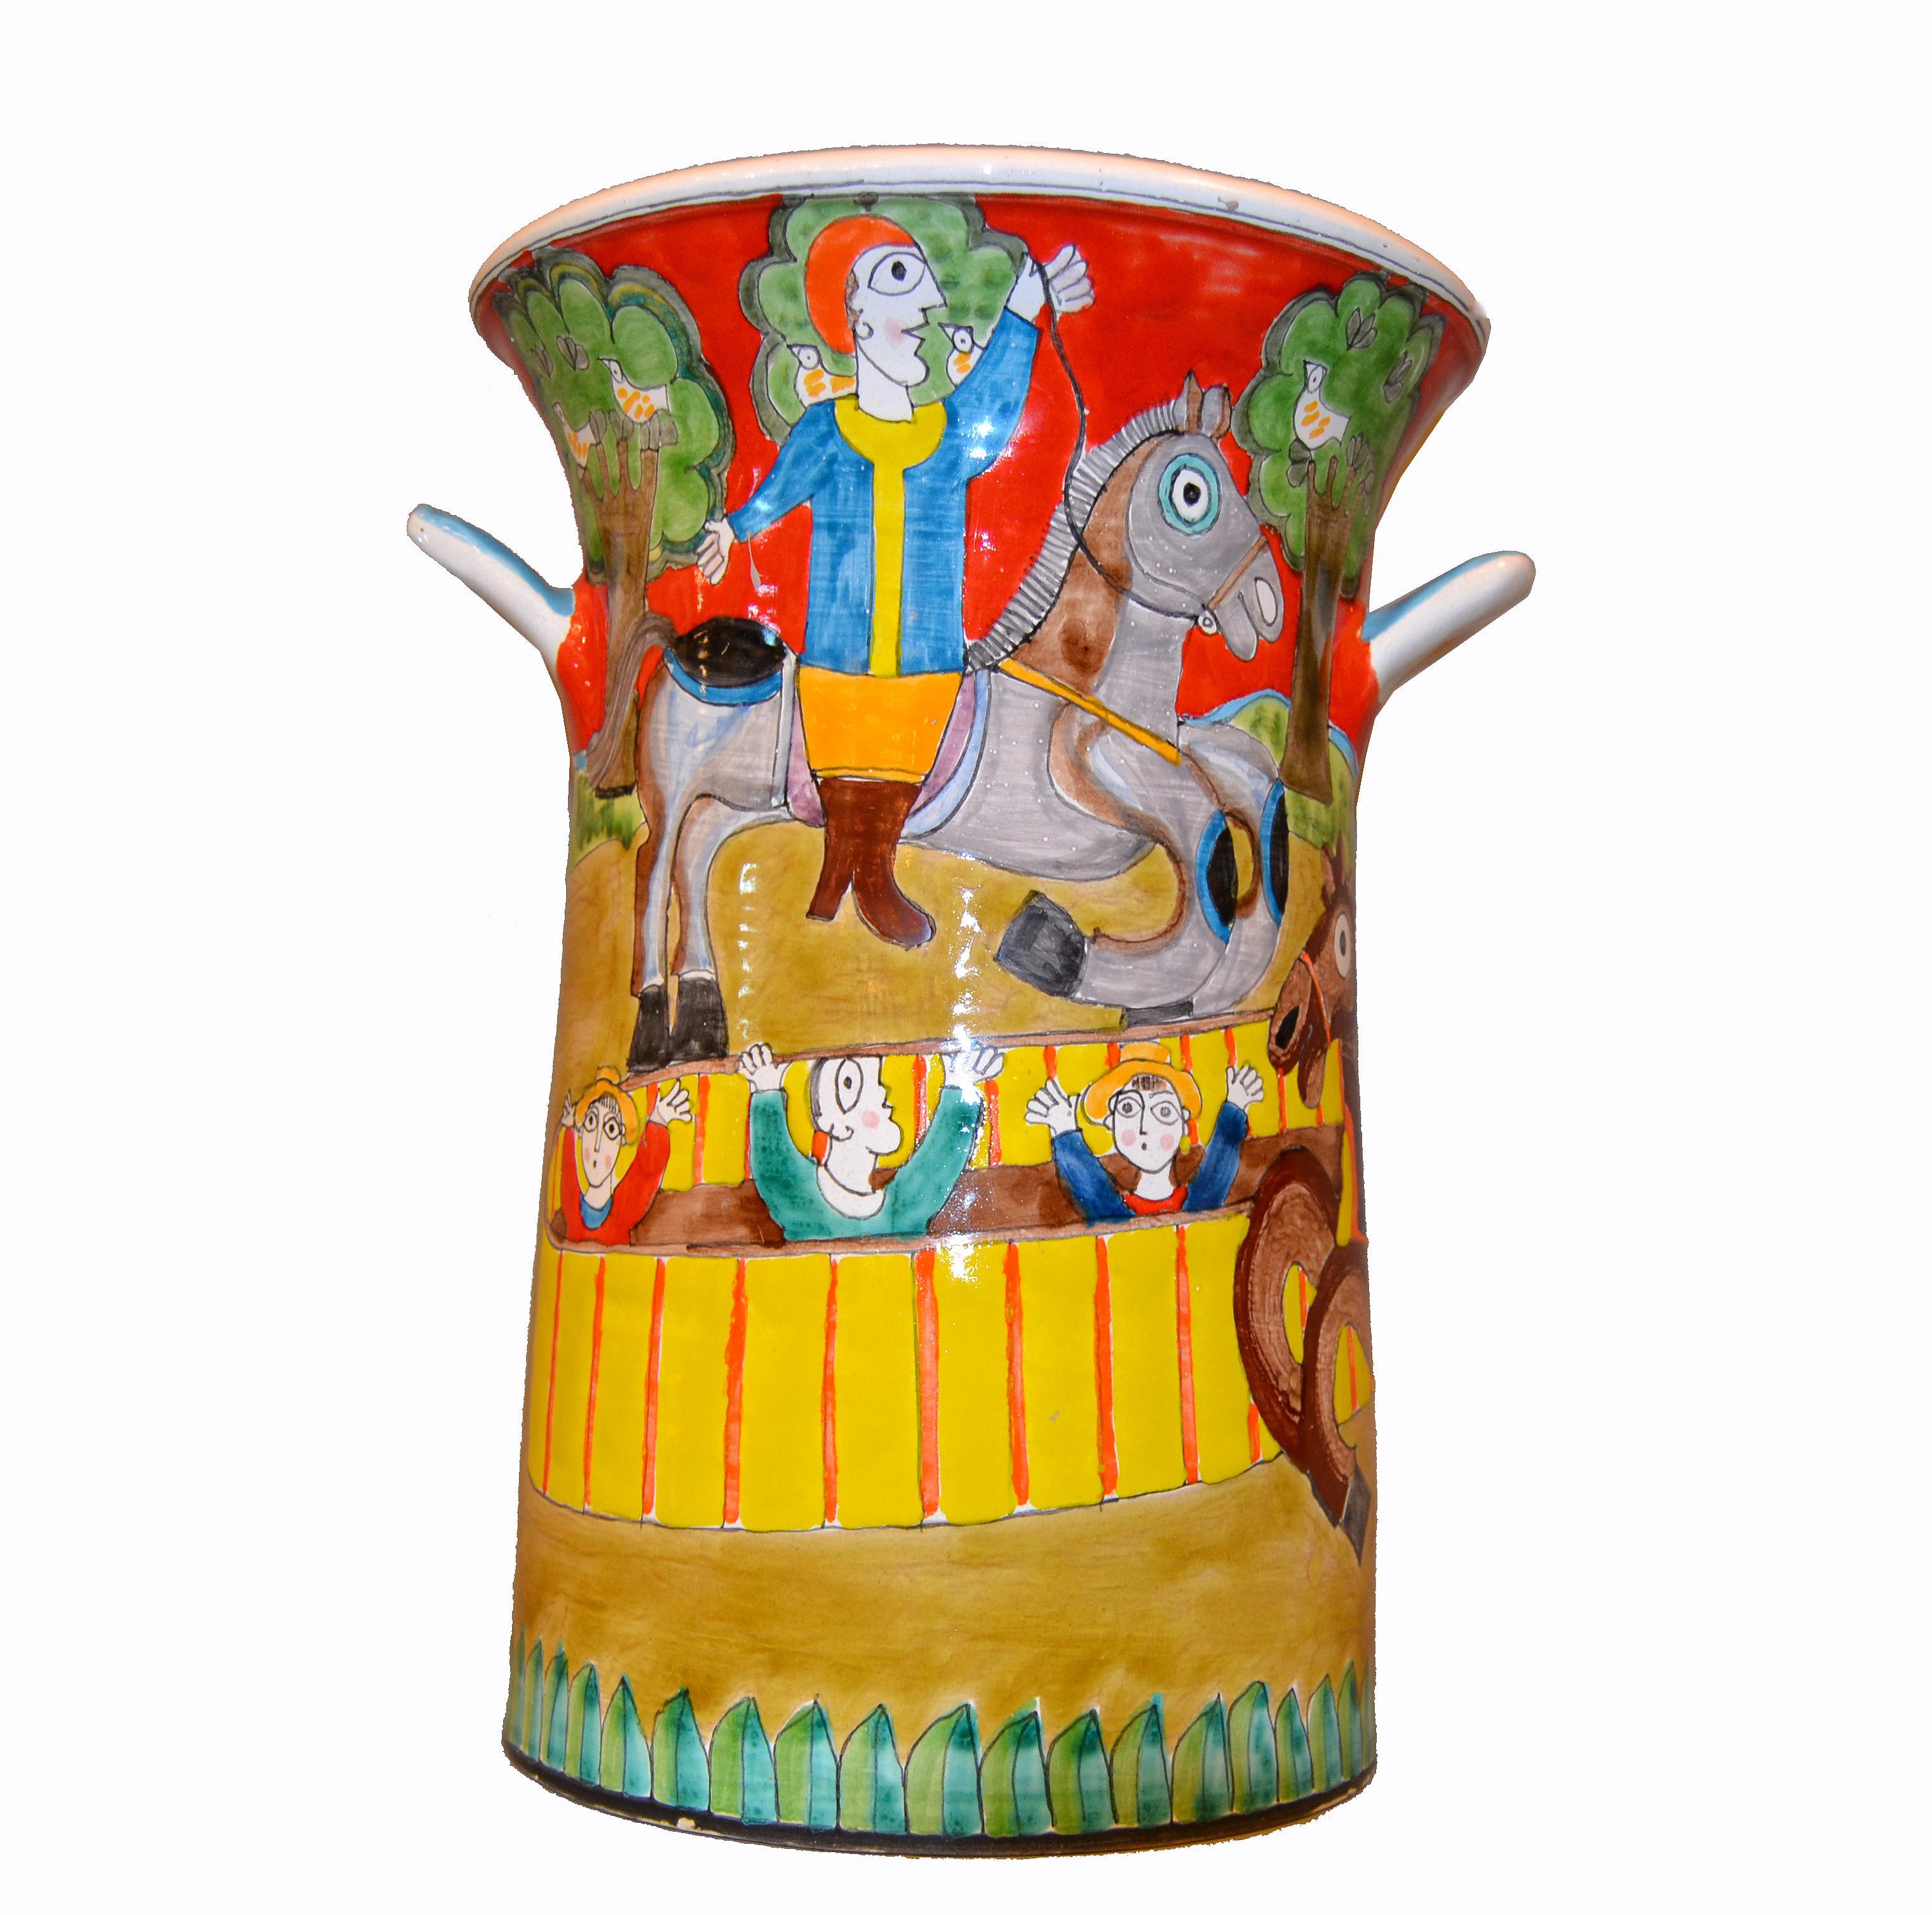 Vase ou récipient en poterie peint à la main par Giovanni DeSimone, vers 1969, originaire d'Italie.
Le tableau représente deux hommes à cheval dans une arène de cirque et des gens qui les applaudissent.
Le vase mesure 14 pouces de haut et 10 pouces